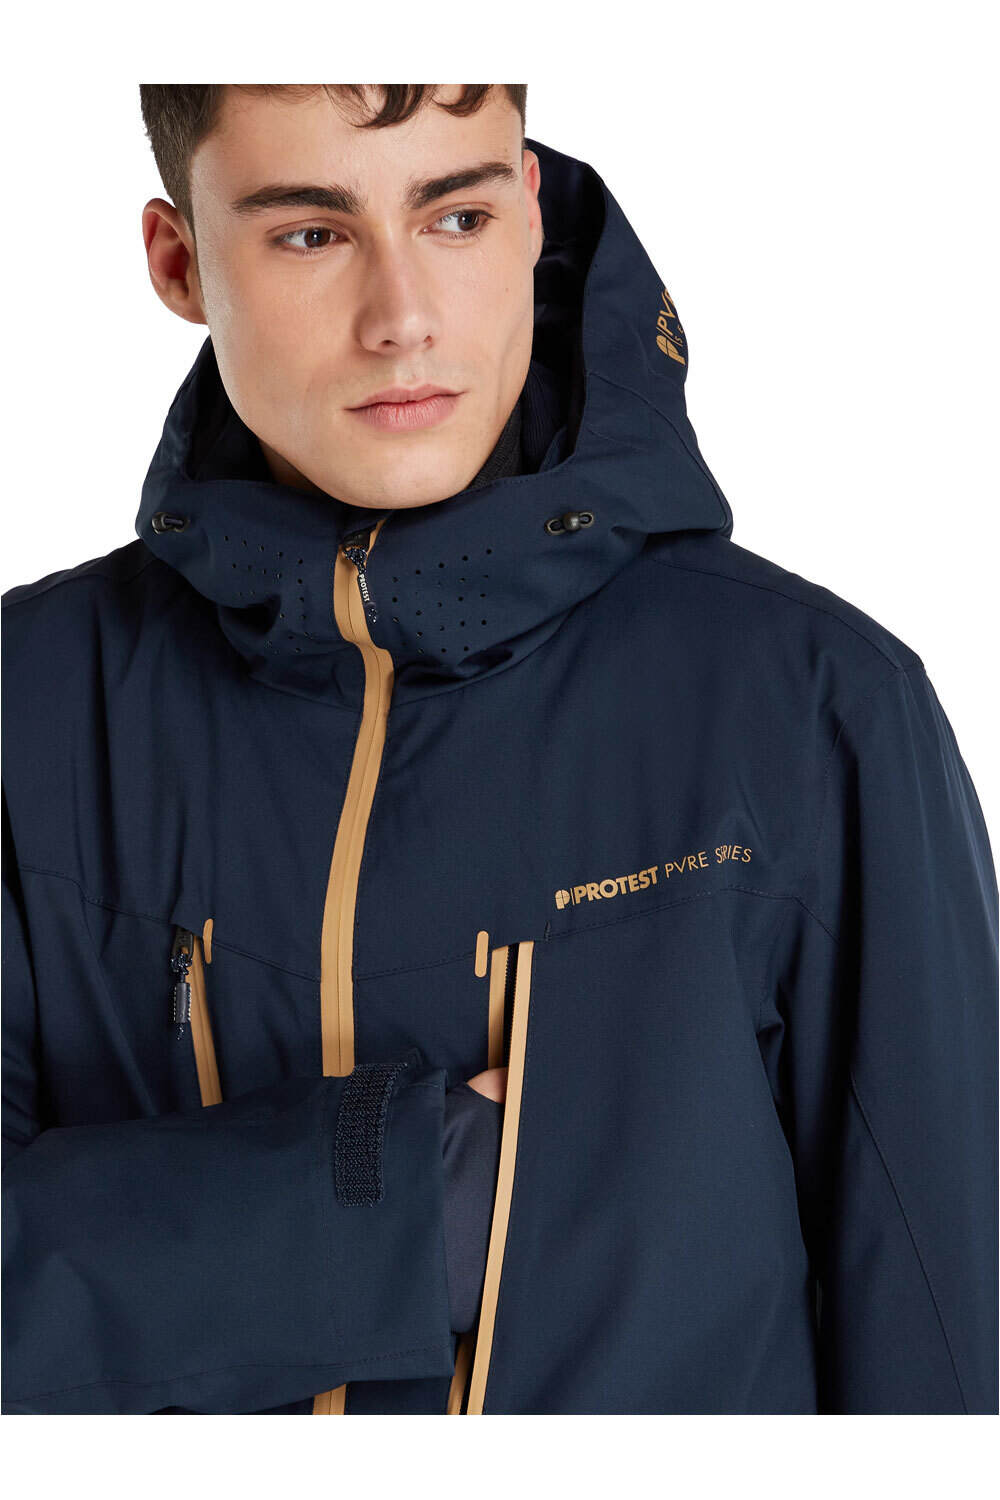 Protest chaqueta esquí hombre PRTTIMO snowjacket vista trasera